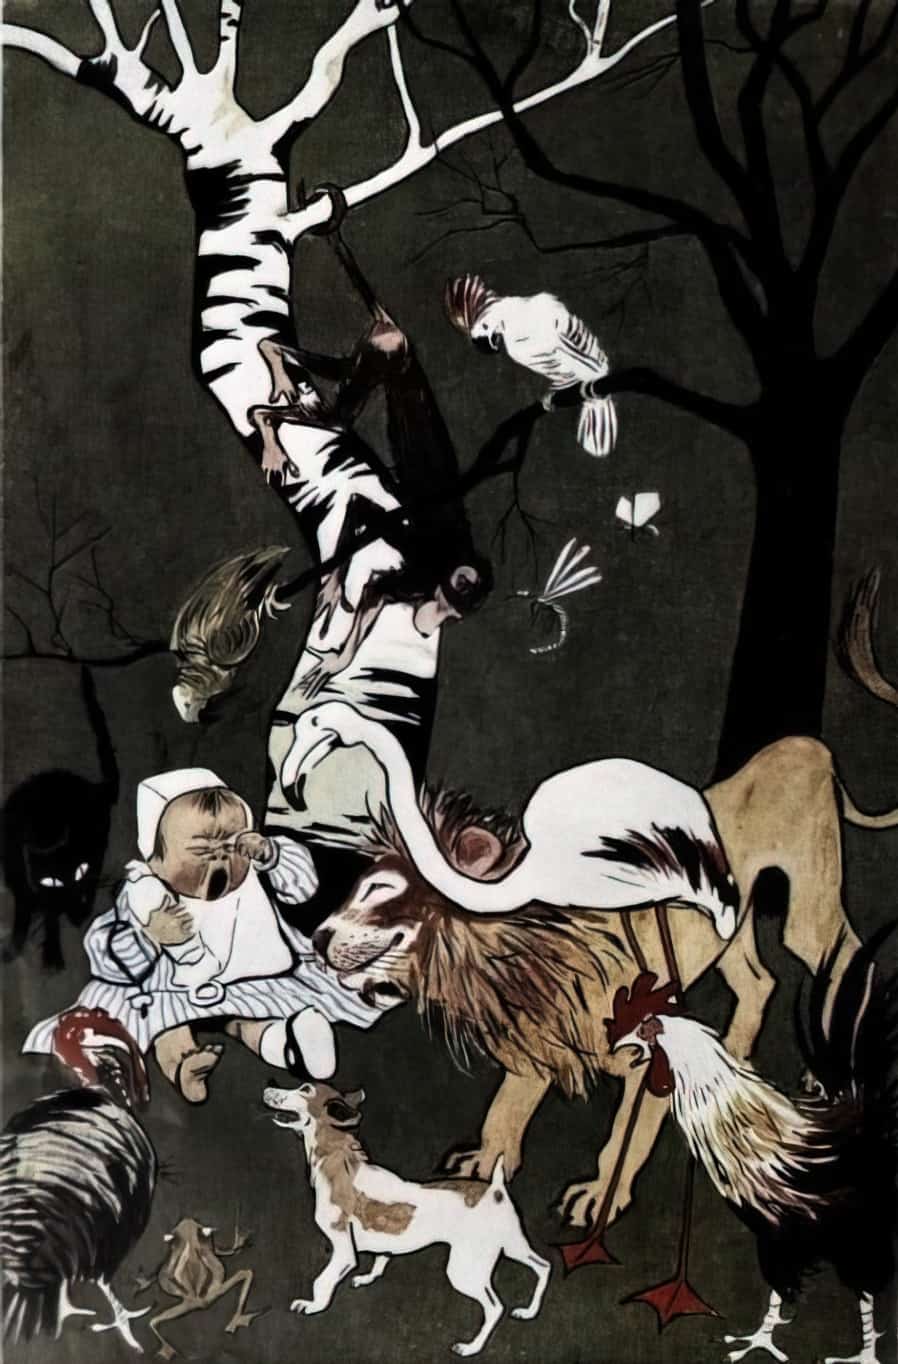 El rey de la creacion, por Sancha, 1904, Madrid, baby in a forest, surrounded by helpful animals.